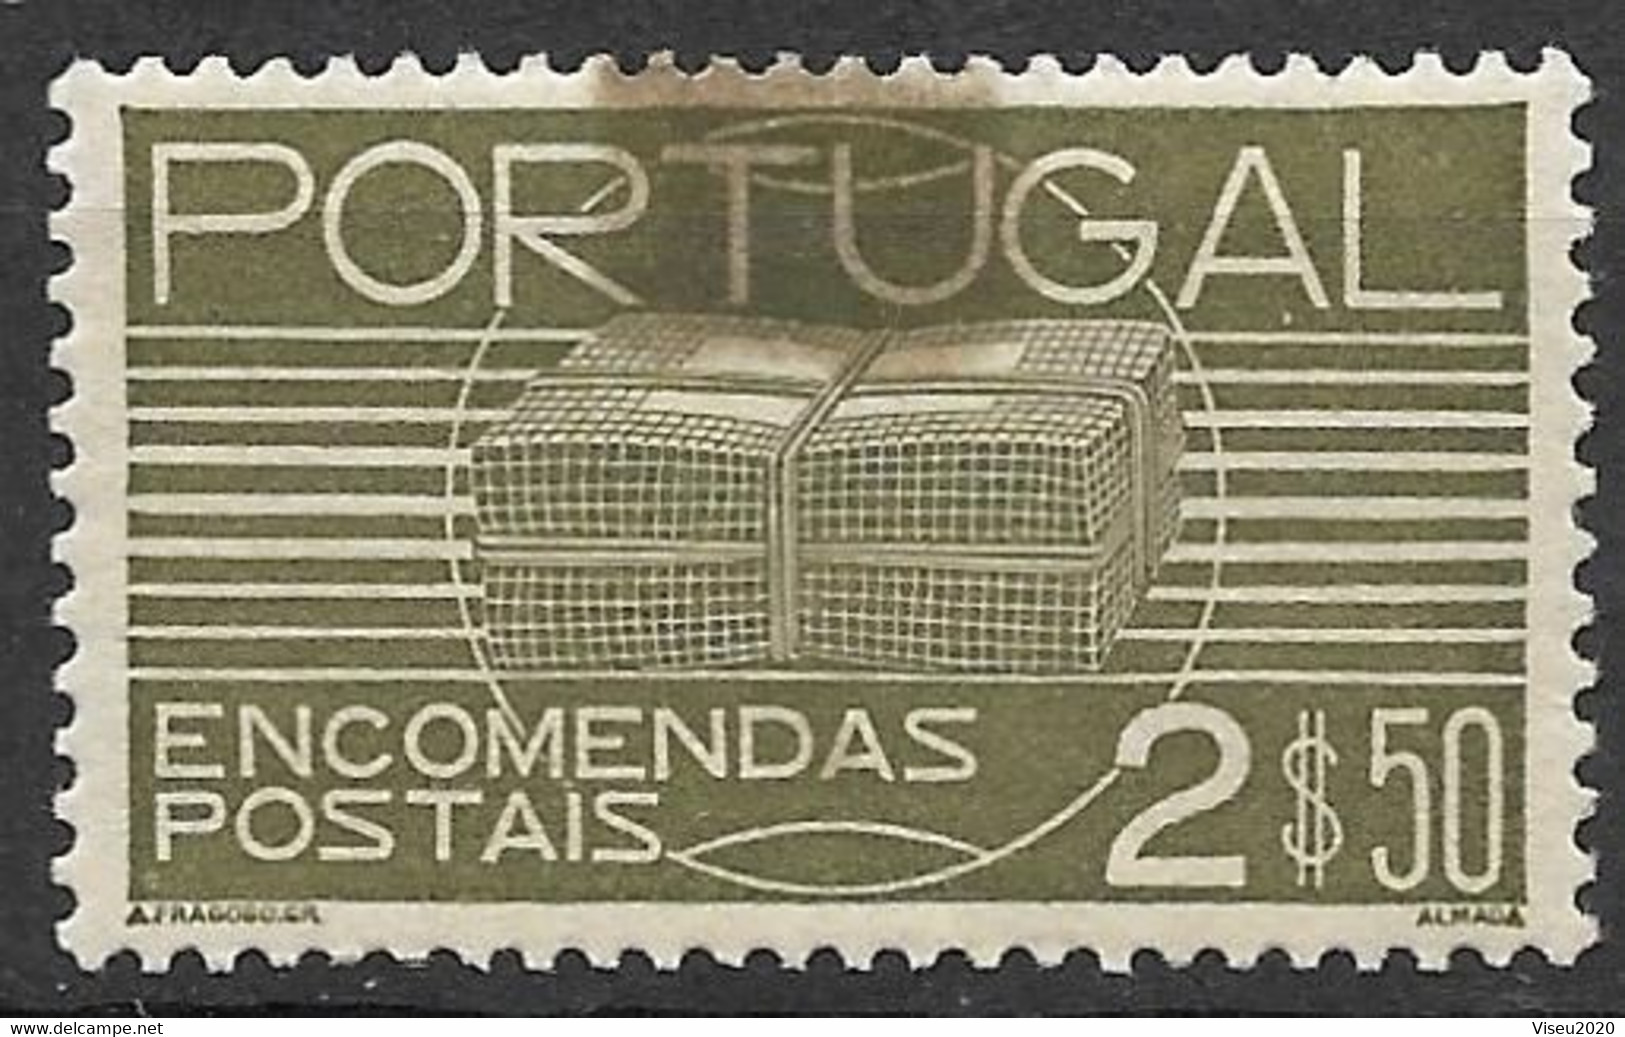 Portugal - 1936 Encomendas Postais - 2$50 - Afinsa 22 - Ongebruikt